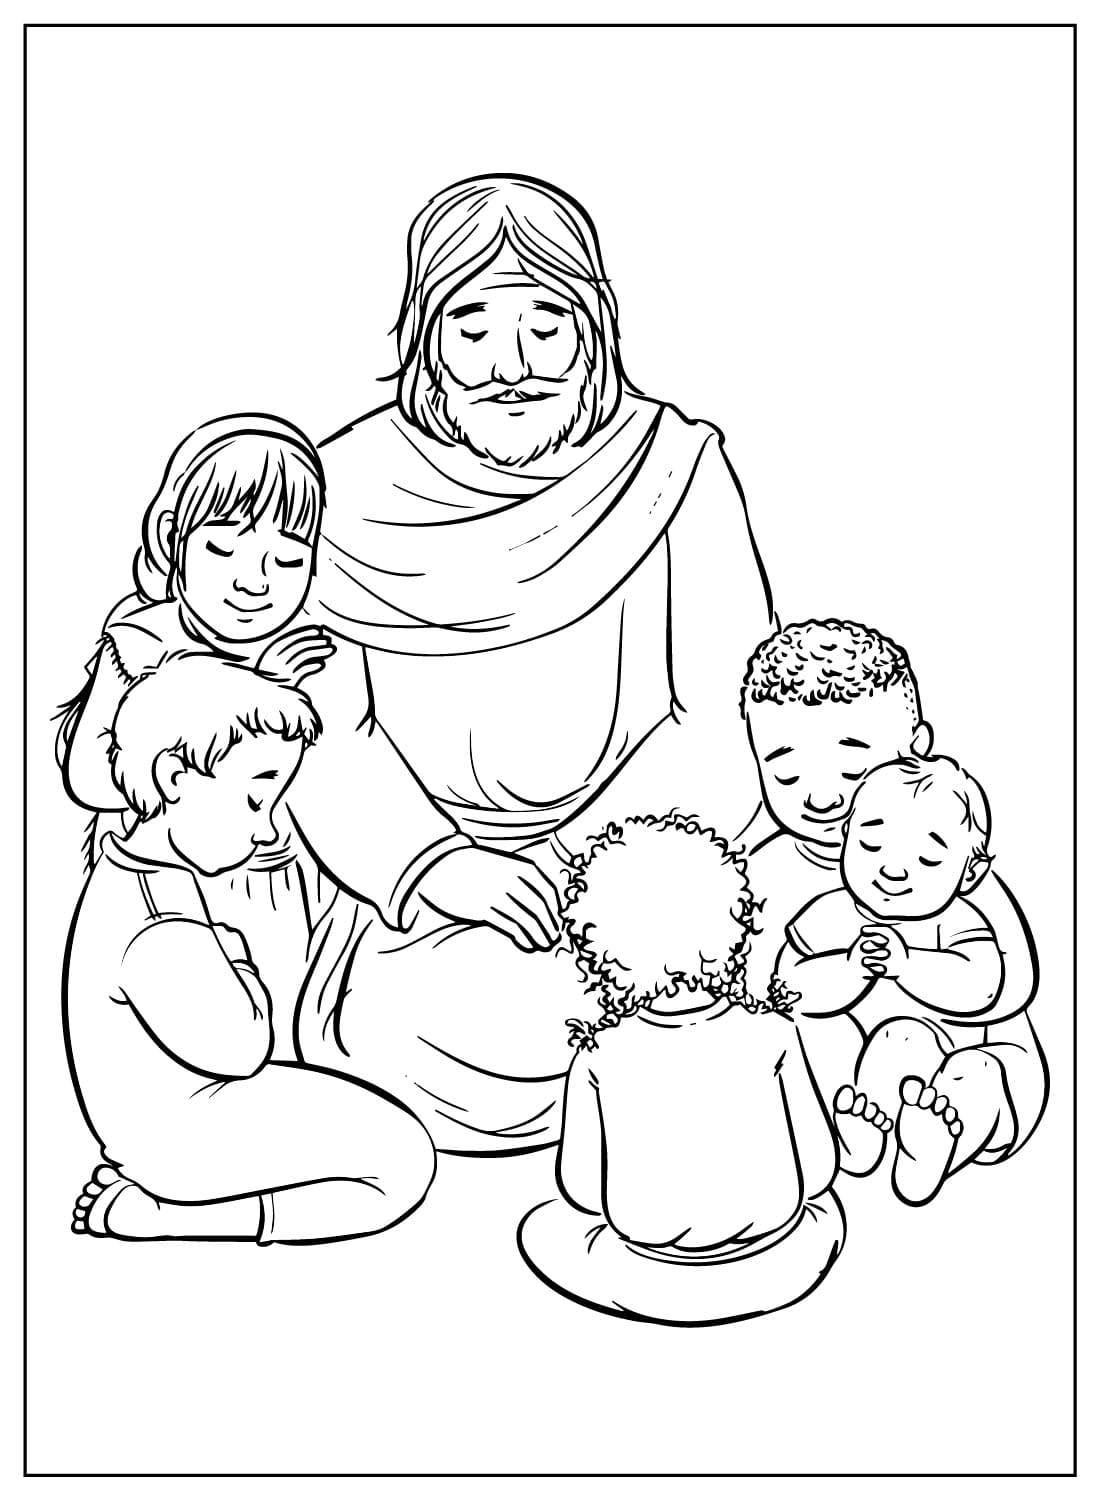 يسوع مع الأطفال يصلون من يوم الصلاة